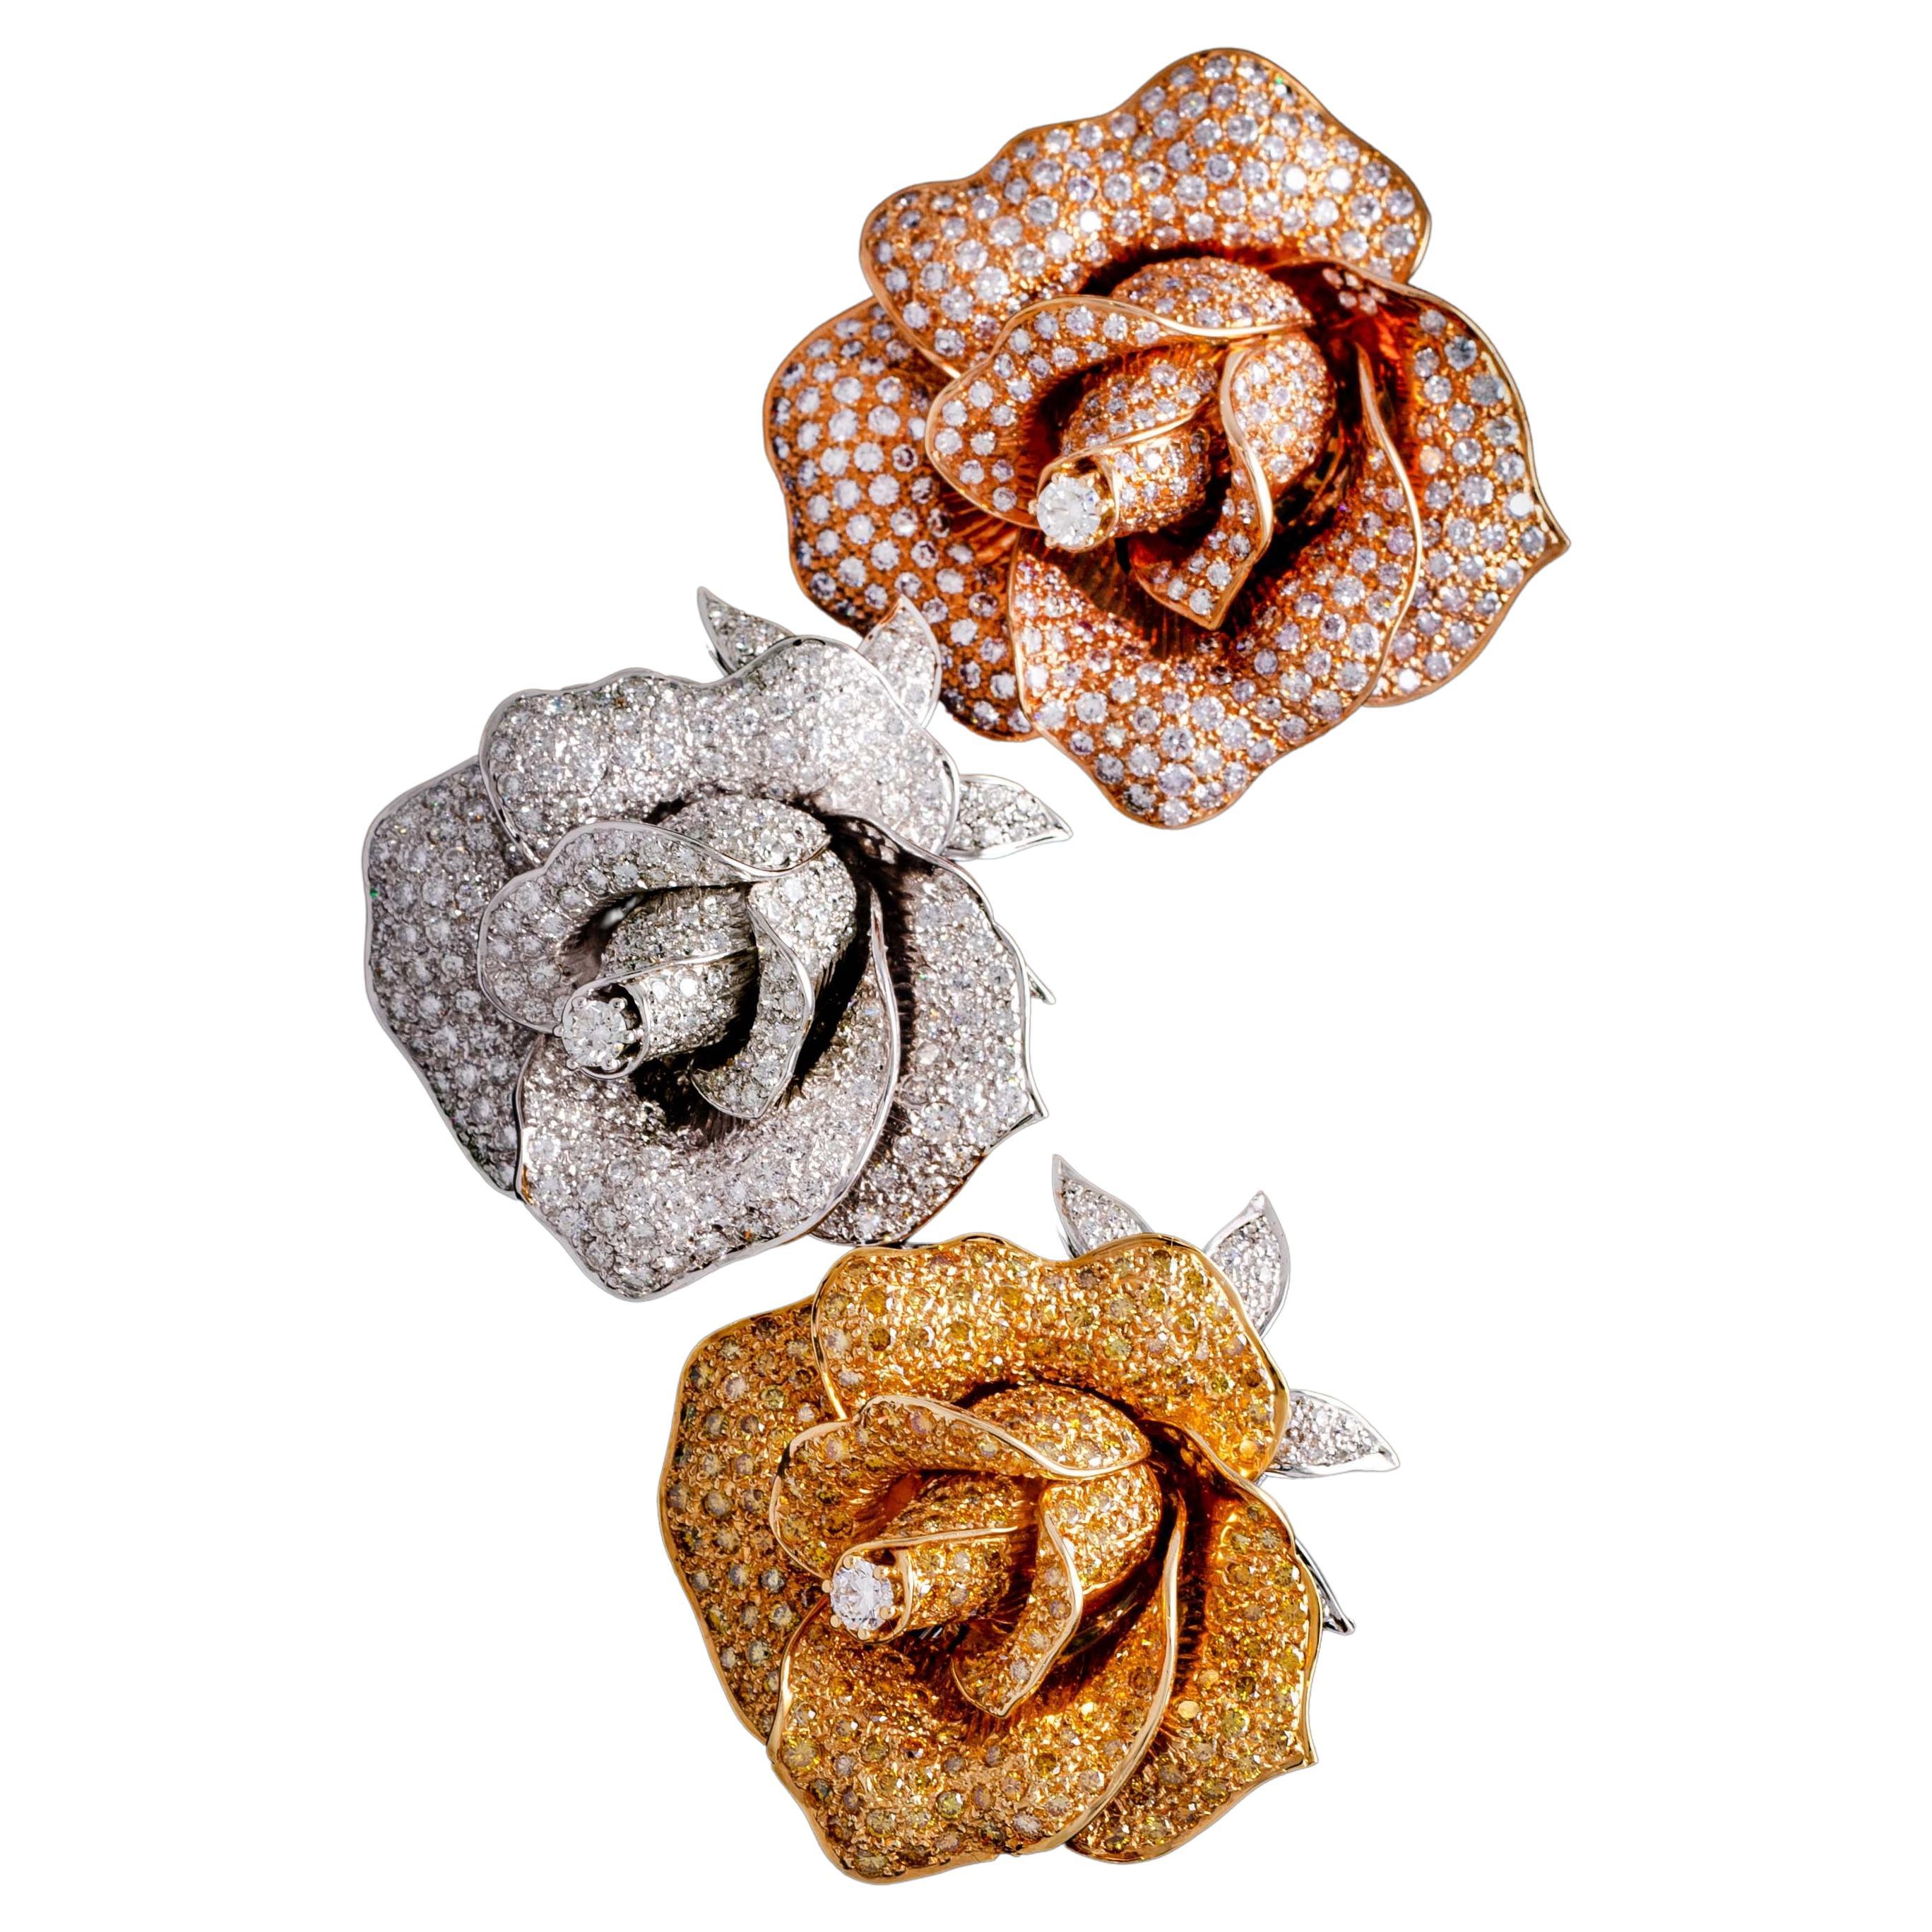 Trois broches en diamant et or 18 carats représentant des roses.

Dimensions : 
Rose : environ 5,50 x 5,00 centimètres.
Jaune : environ 5,20 x 4,70 centimètres.
Blanc : environ 5,20 x 4,70 centimètres.

Poids total : 118,71 grammes.
(Rose : 40,90